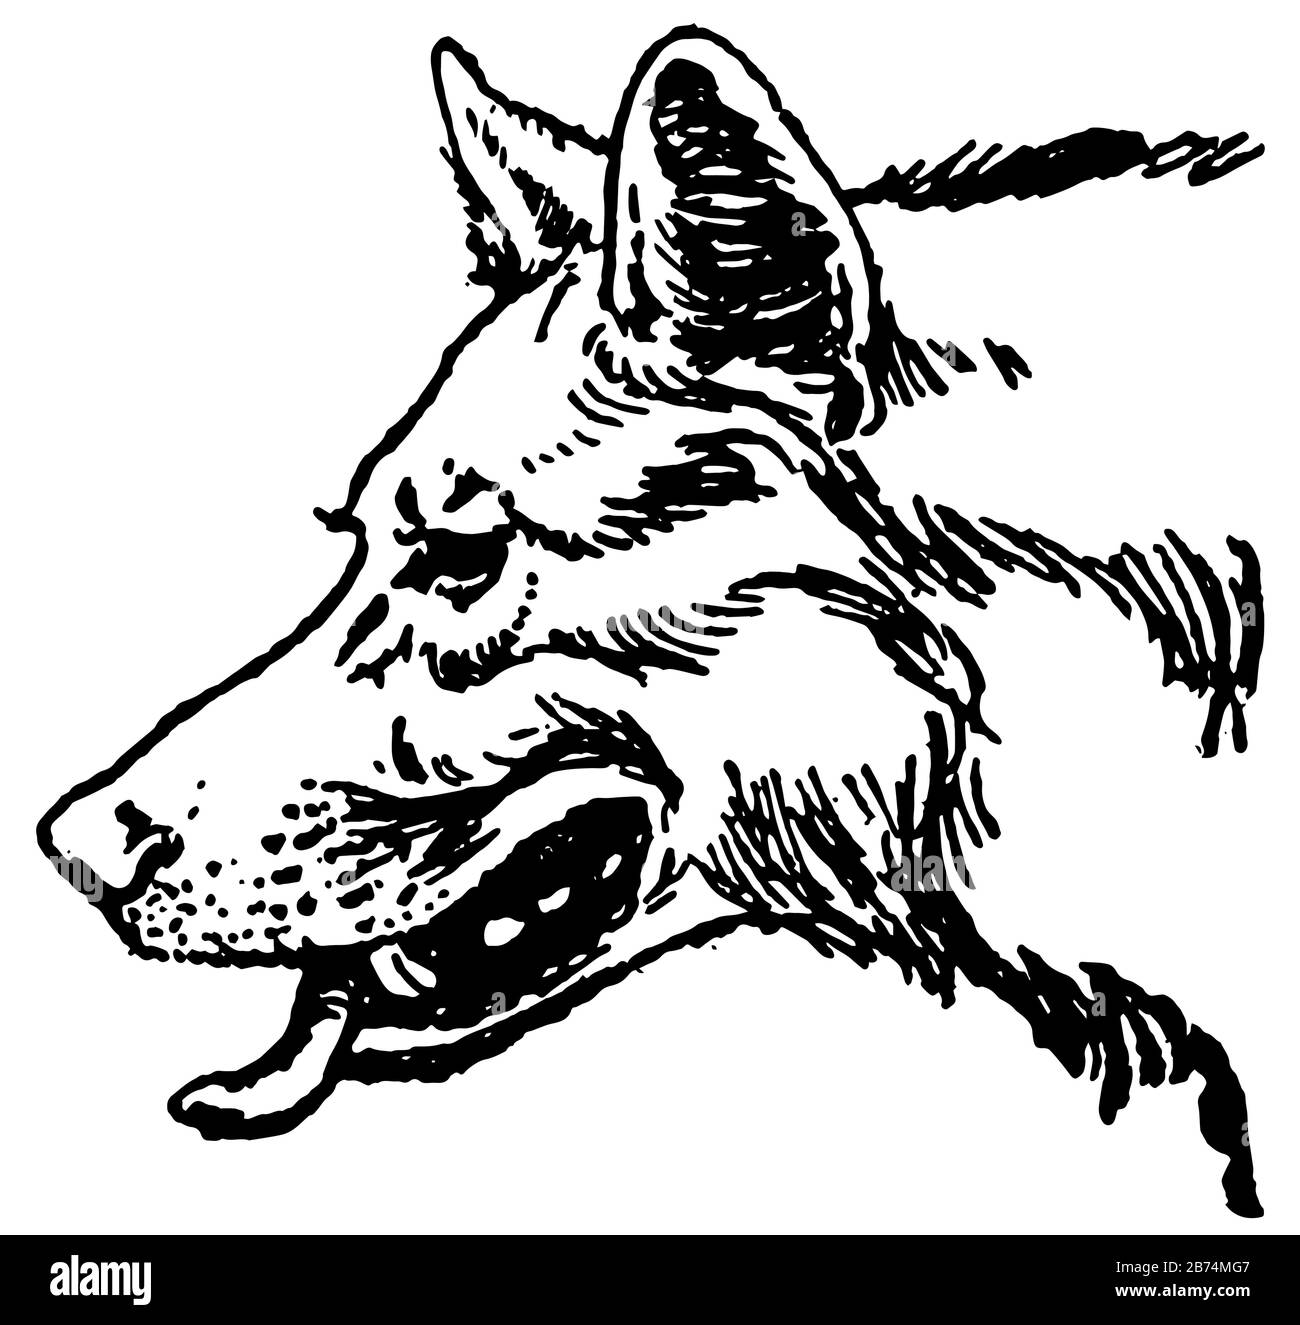 Hermanos de Mowgli, esta imagen muestra la cara del lobo mirando hacia el lado izquierdo, dibujo de línea vintage o ilustración de grabado Ilustración del Vector